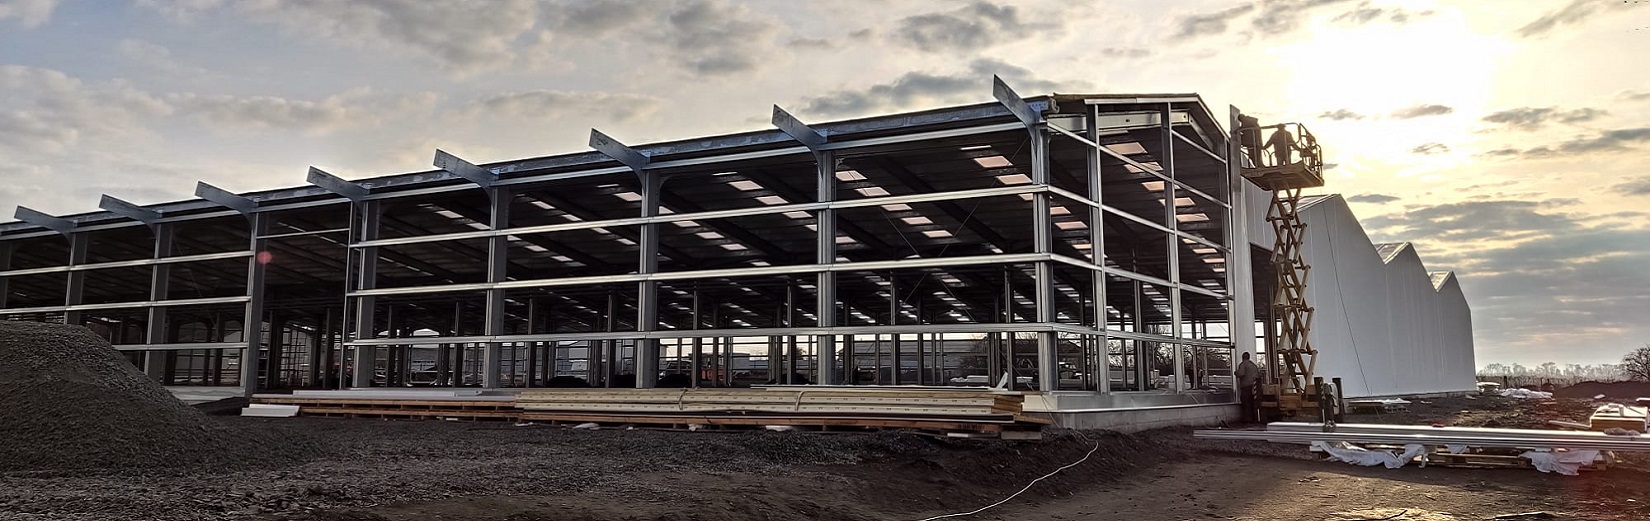 Bâtiments modulaires avec la versatilité des bâtiments sur mesure ou des hangars industriels conventionnels